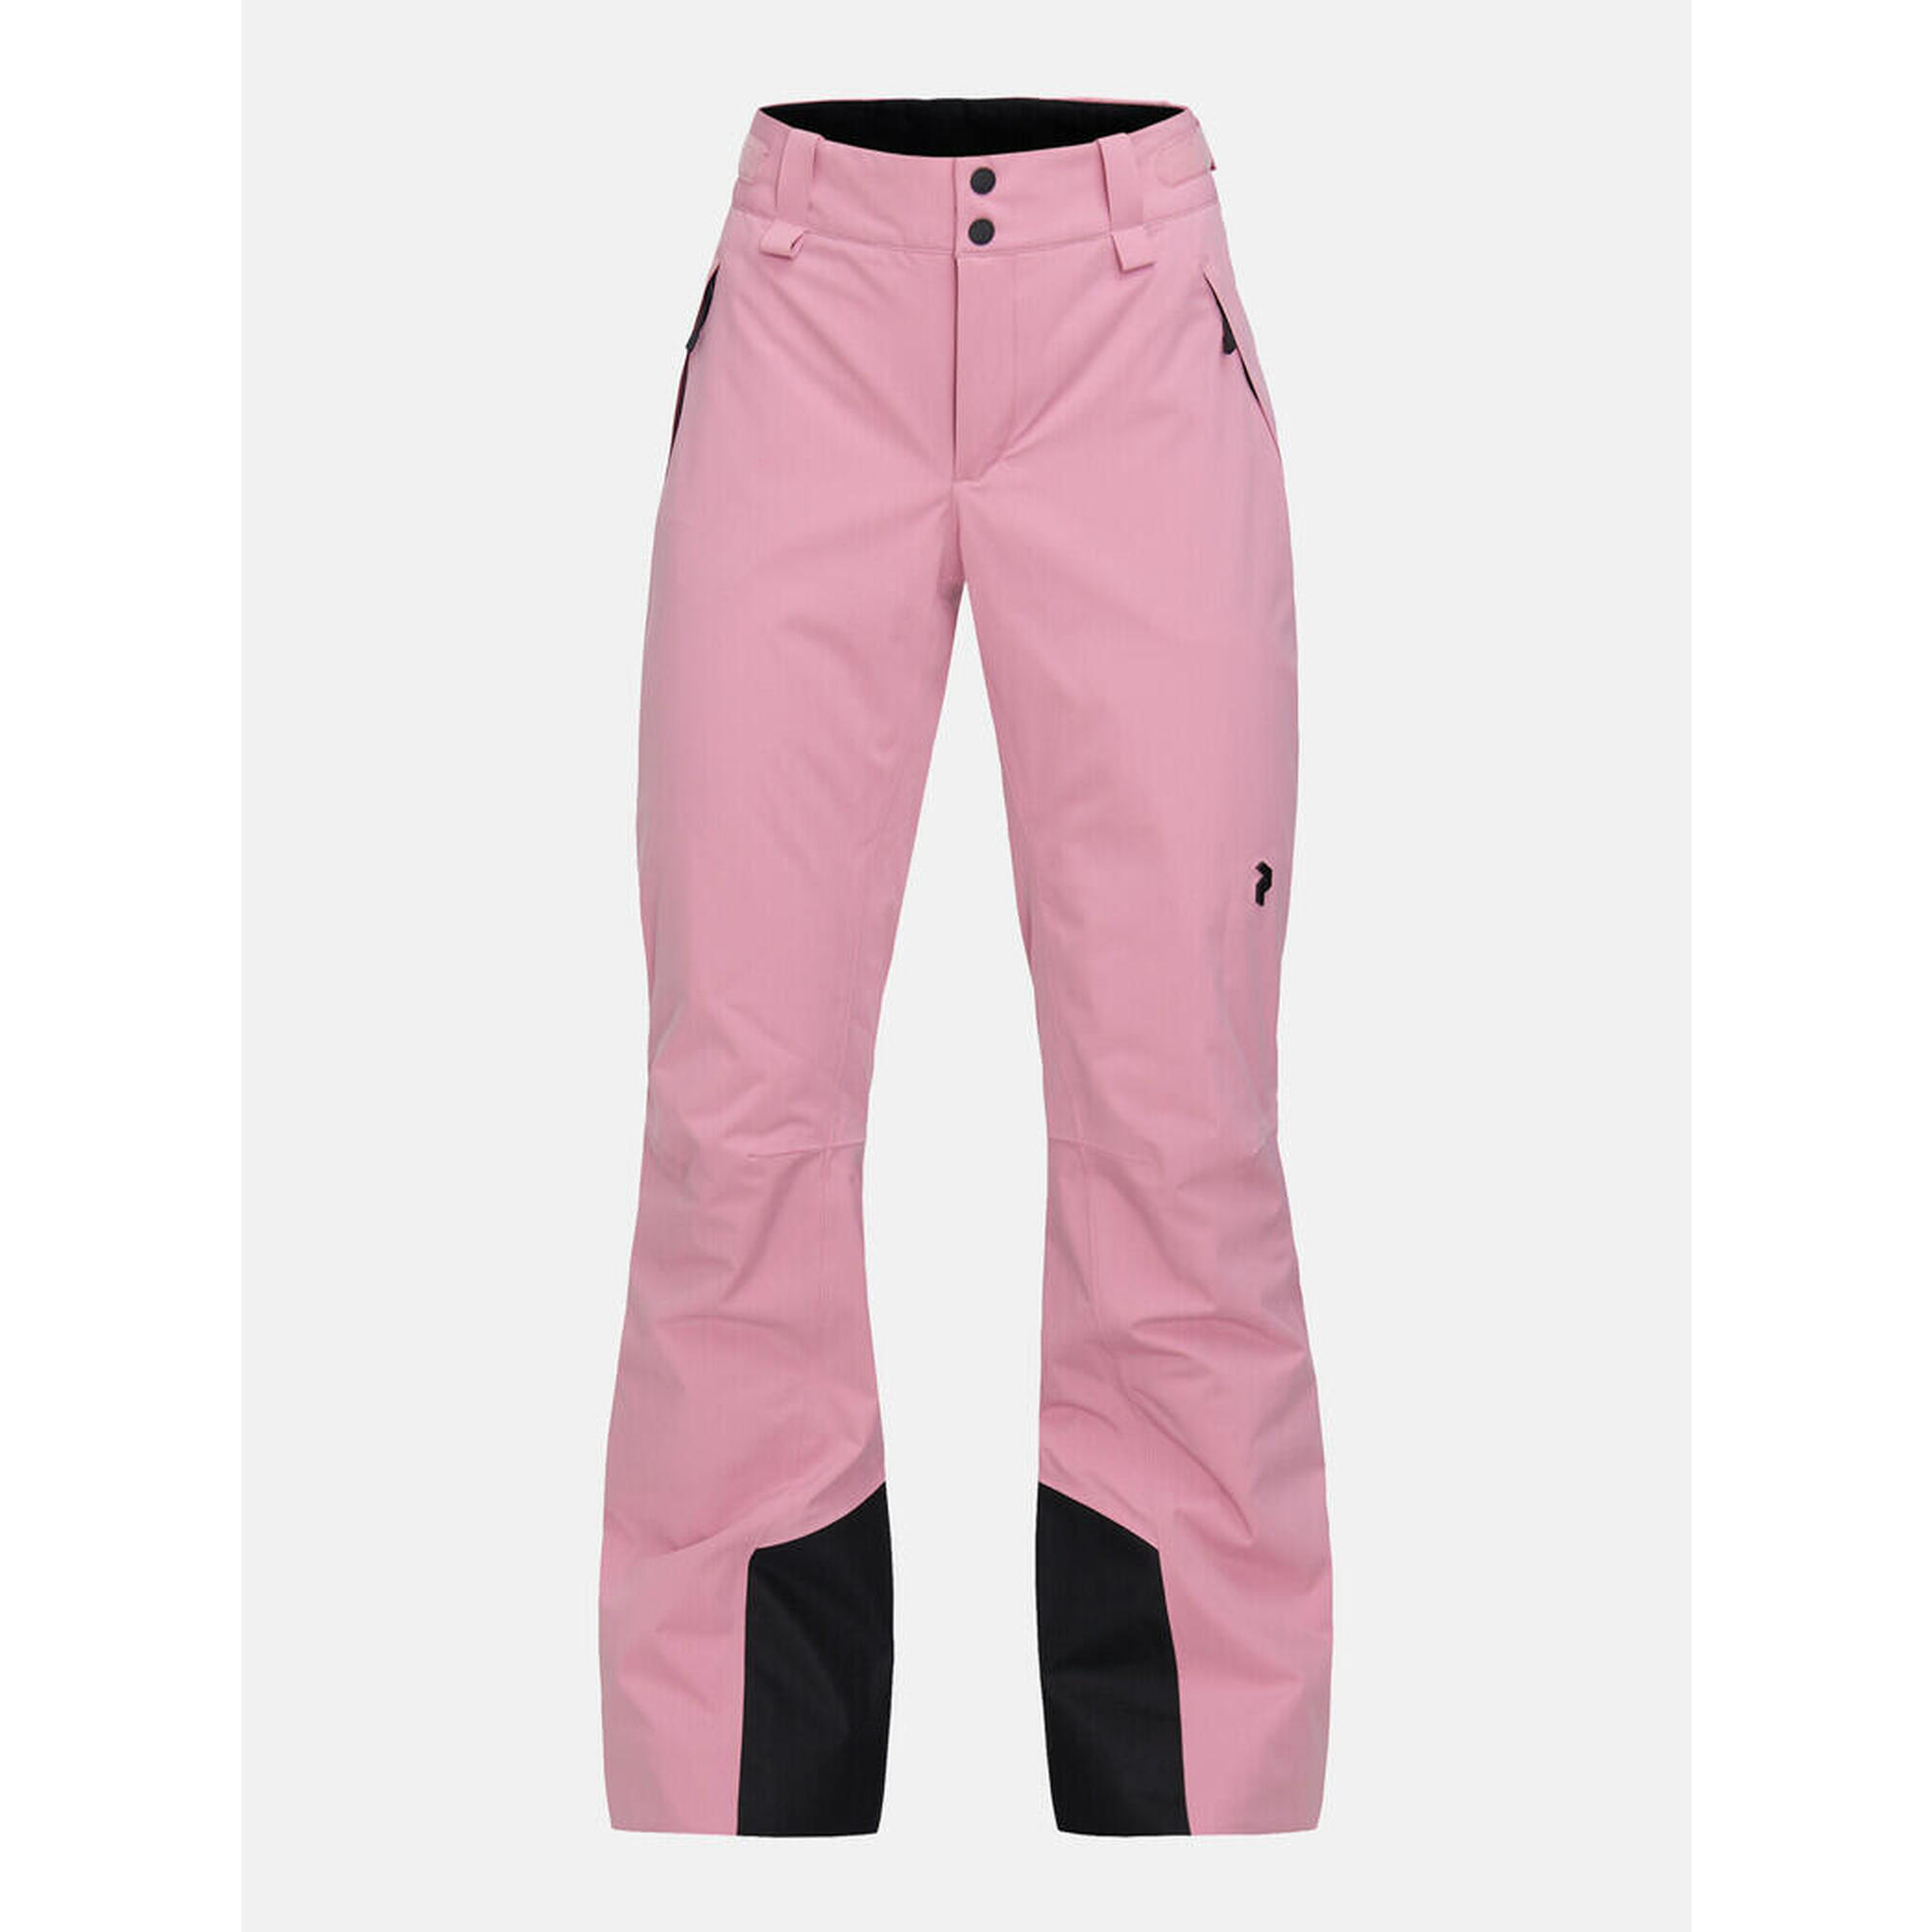 W Anima Pants - rosa - Frauen - Skifahren